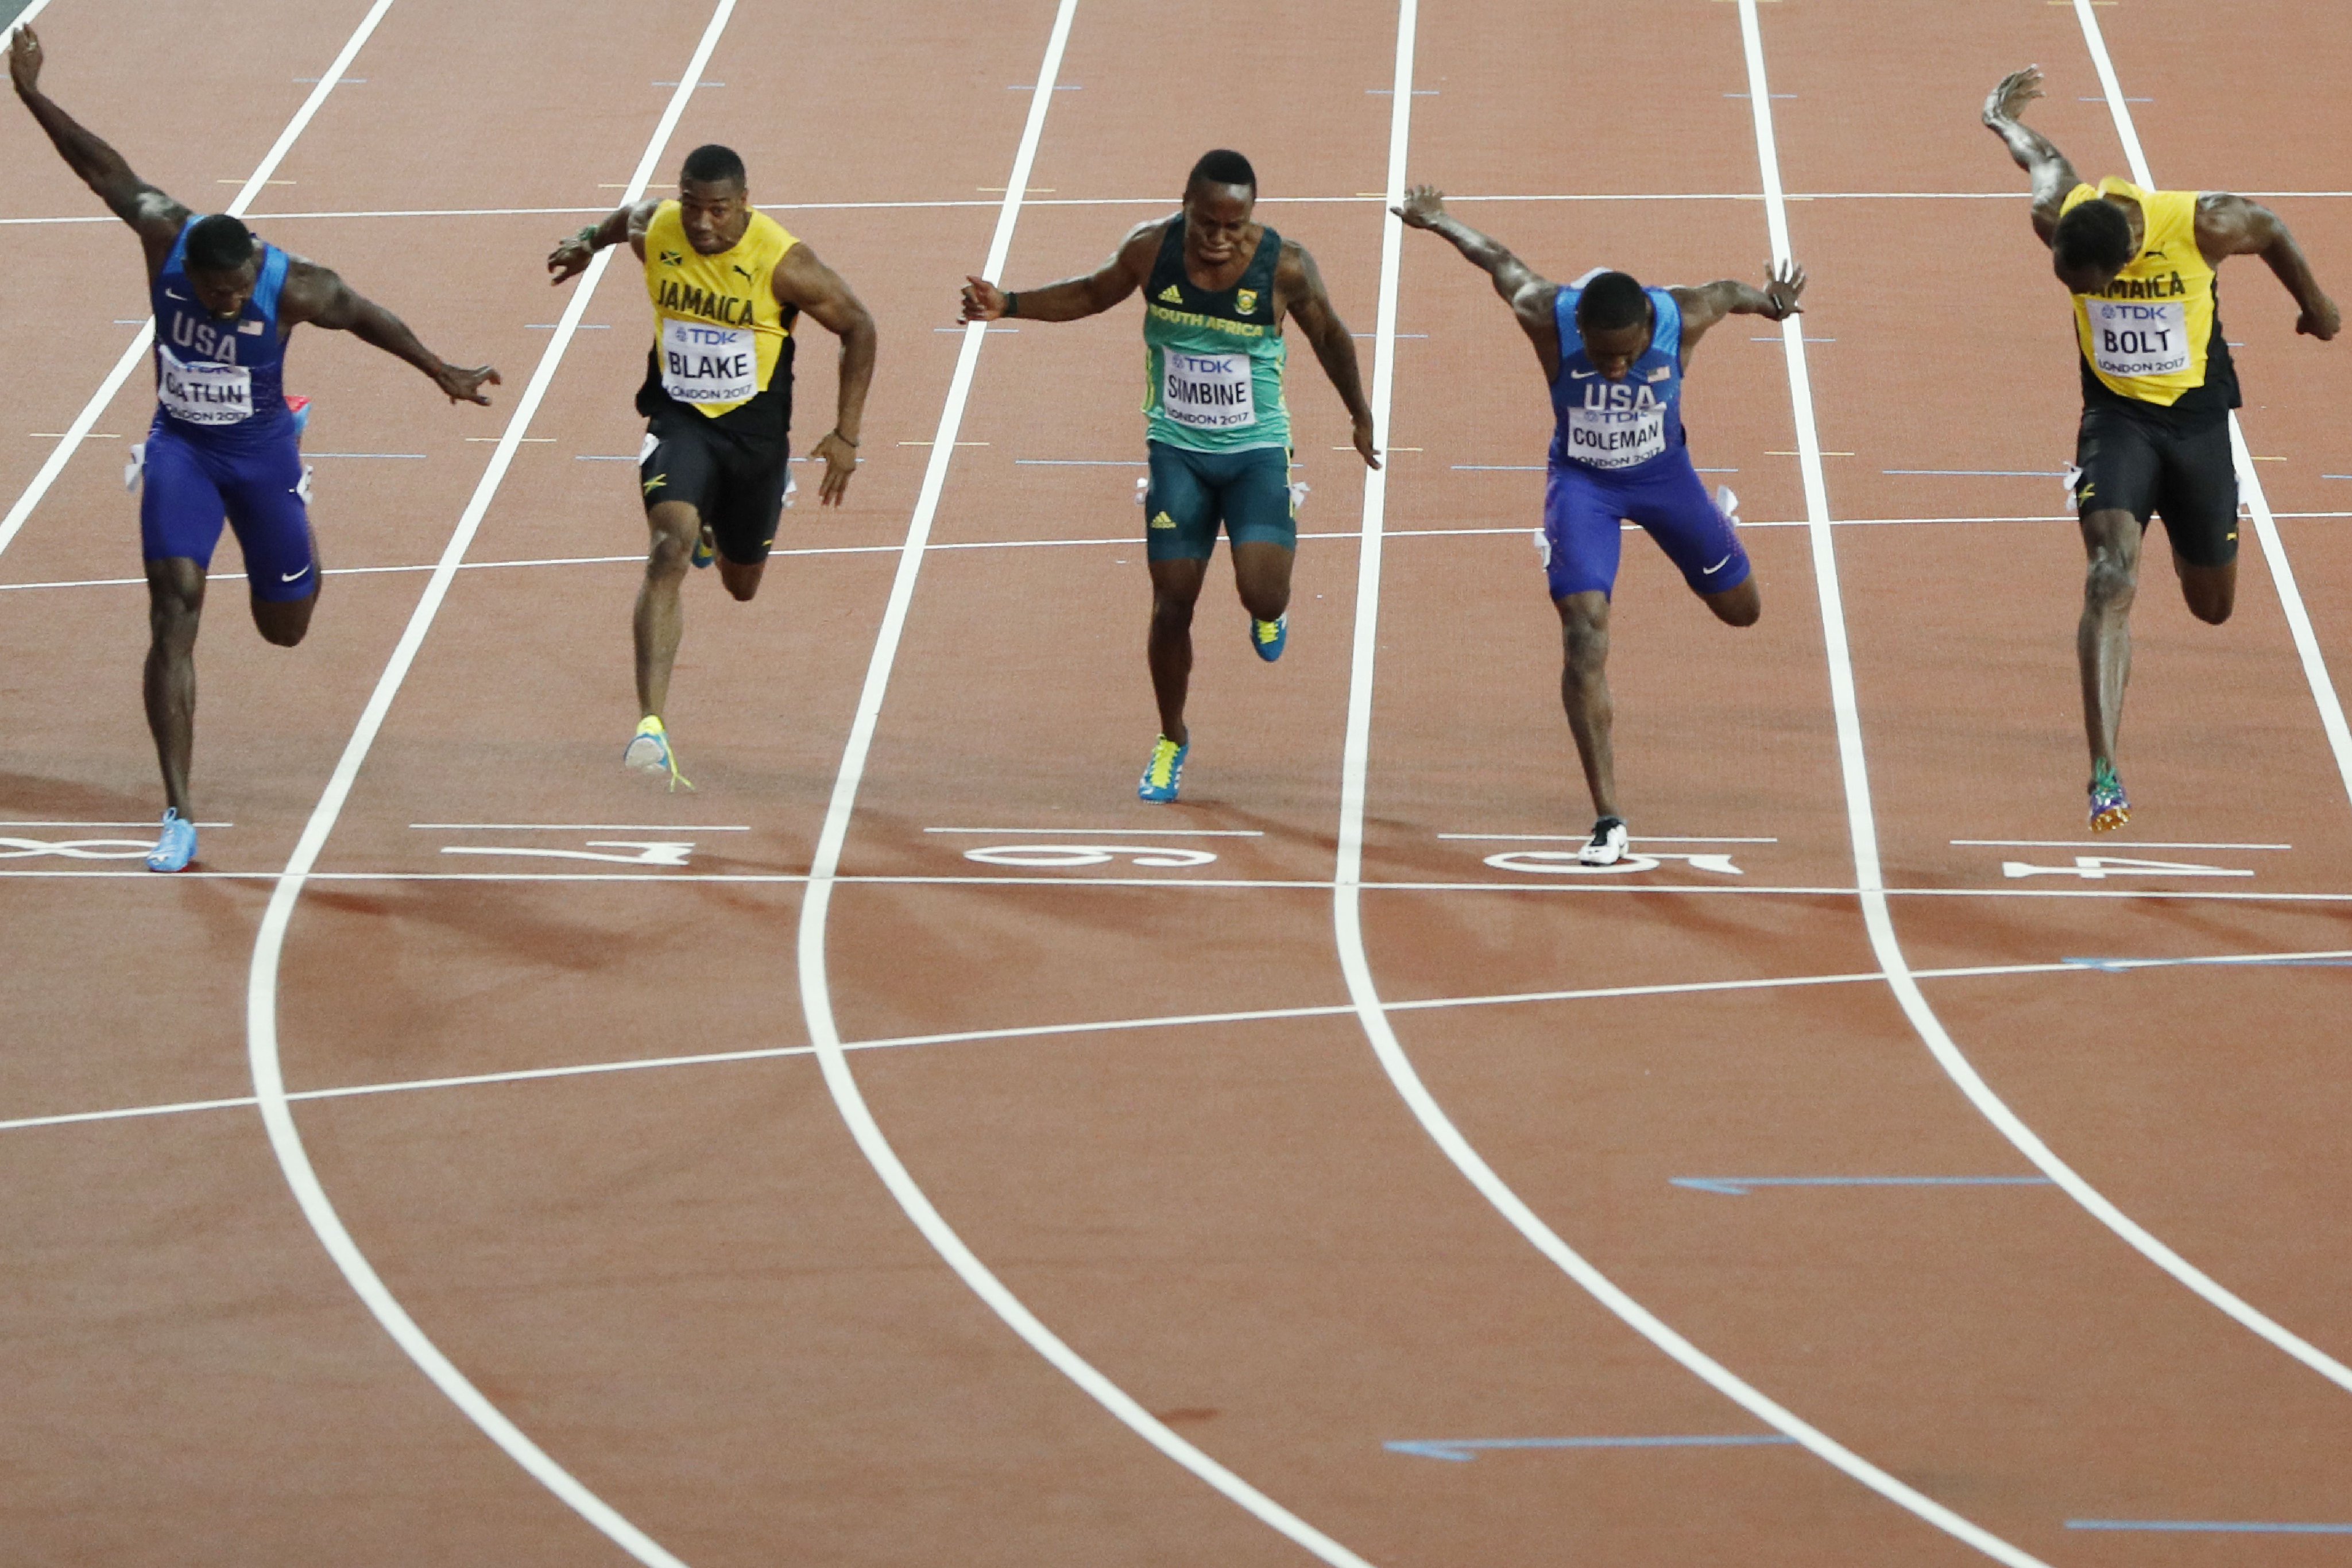 За 1 час спортсмен пробежал 8910 метров. Усейн болт 200 метров. Легкая атлетика 100 метров. Усейн болт рекорд на 100 метров. Спринт 100м.